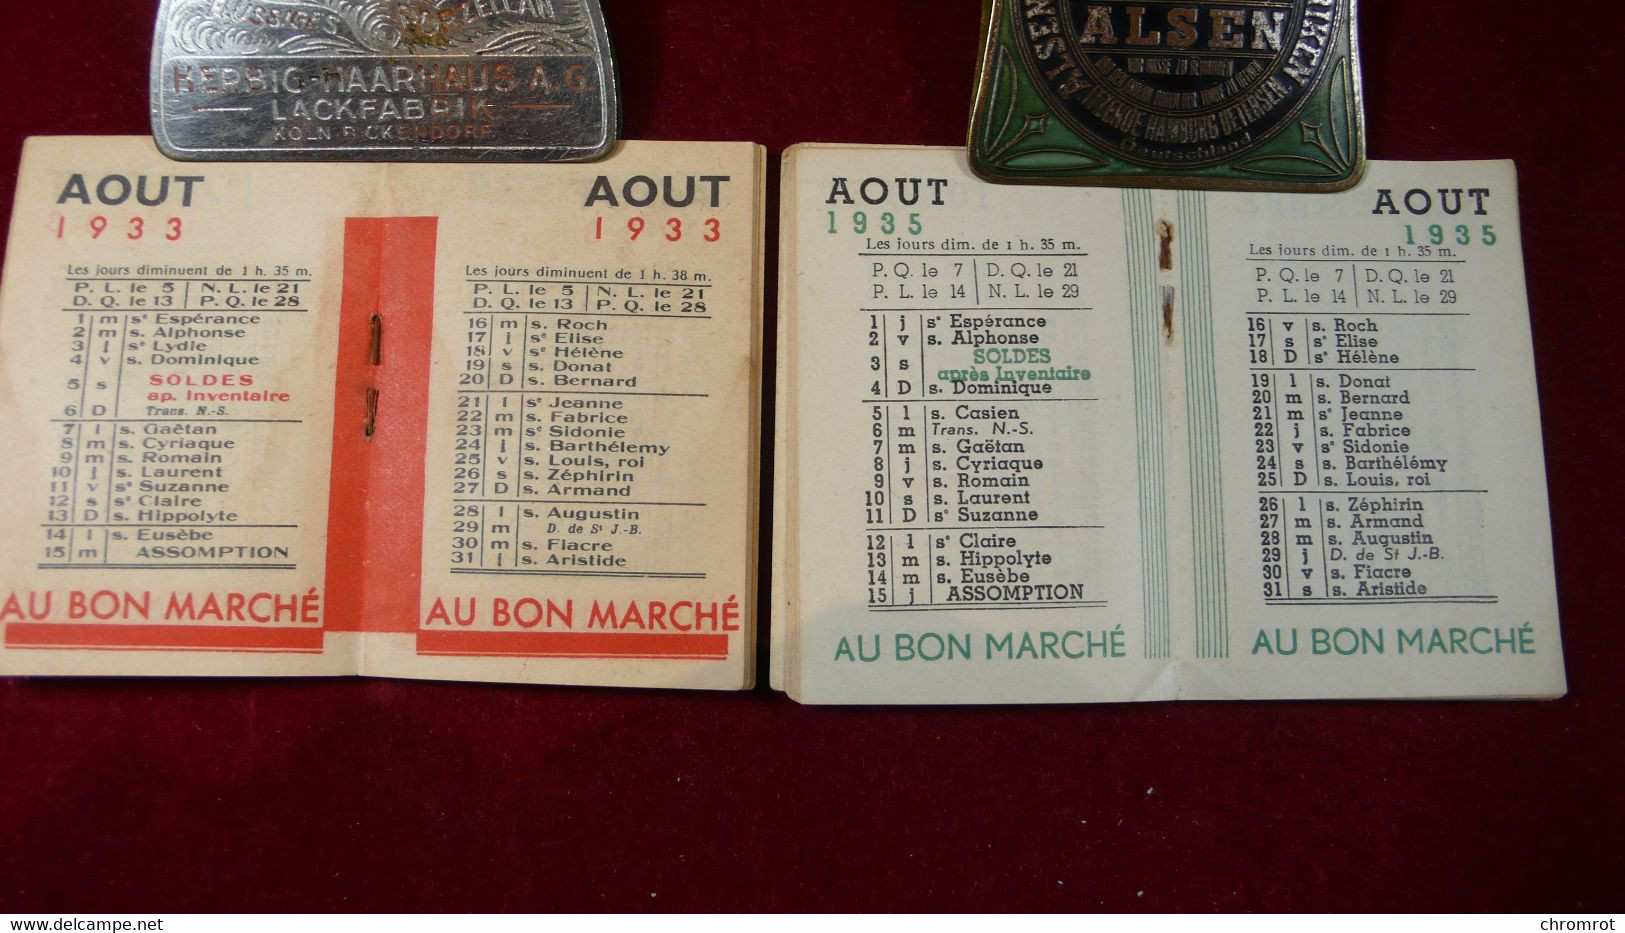 2 Mini Calendar Kalender AU BON MARCHÉ Vintage 1933 / 1935  Maison A. Boucicant Paris 12 Monats Kalender